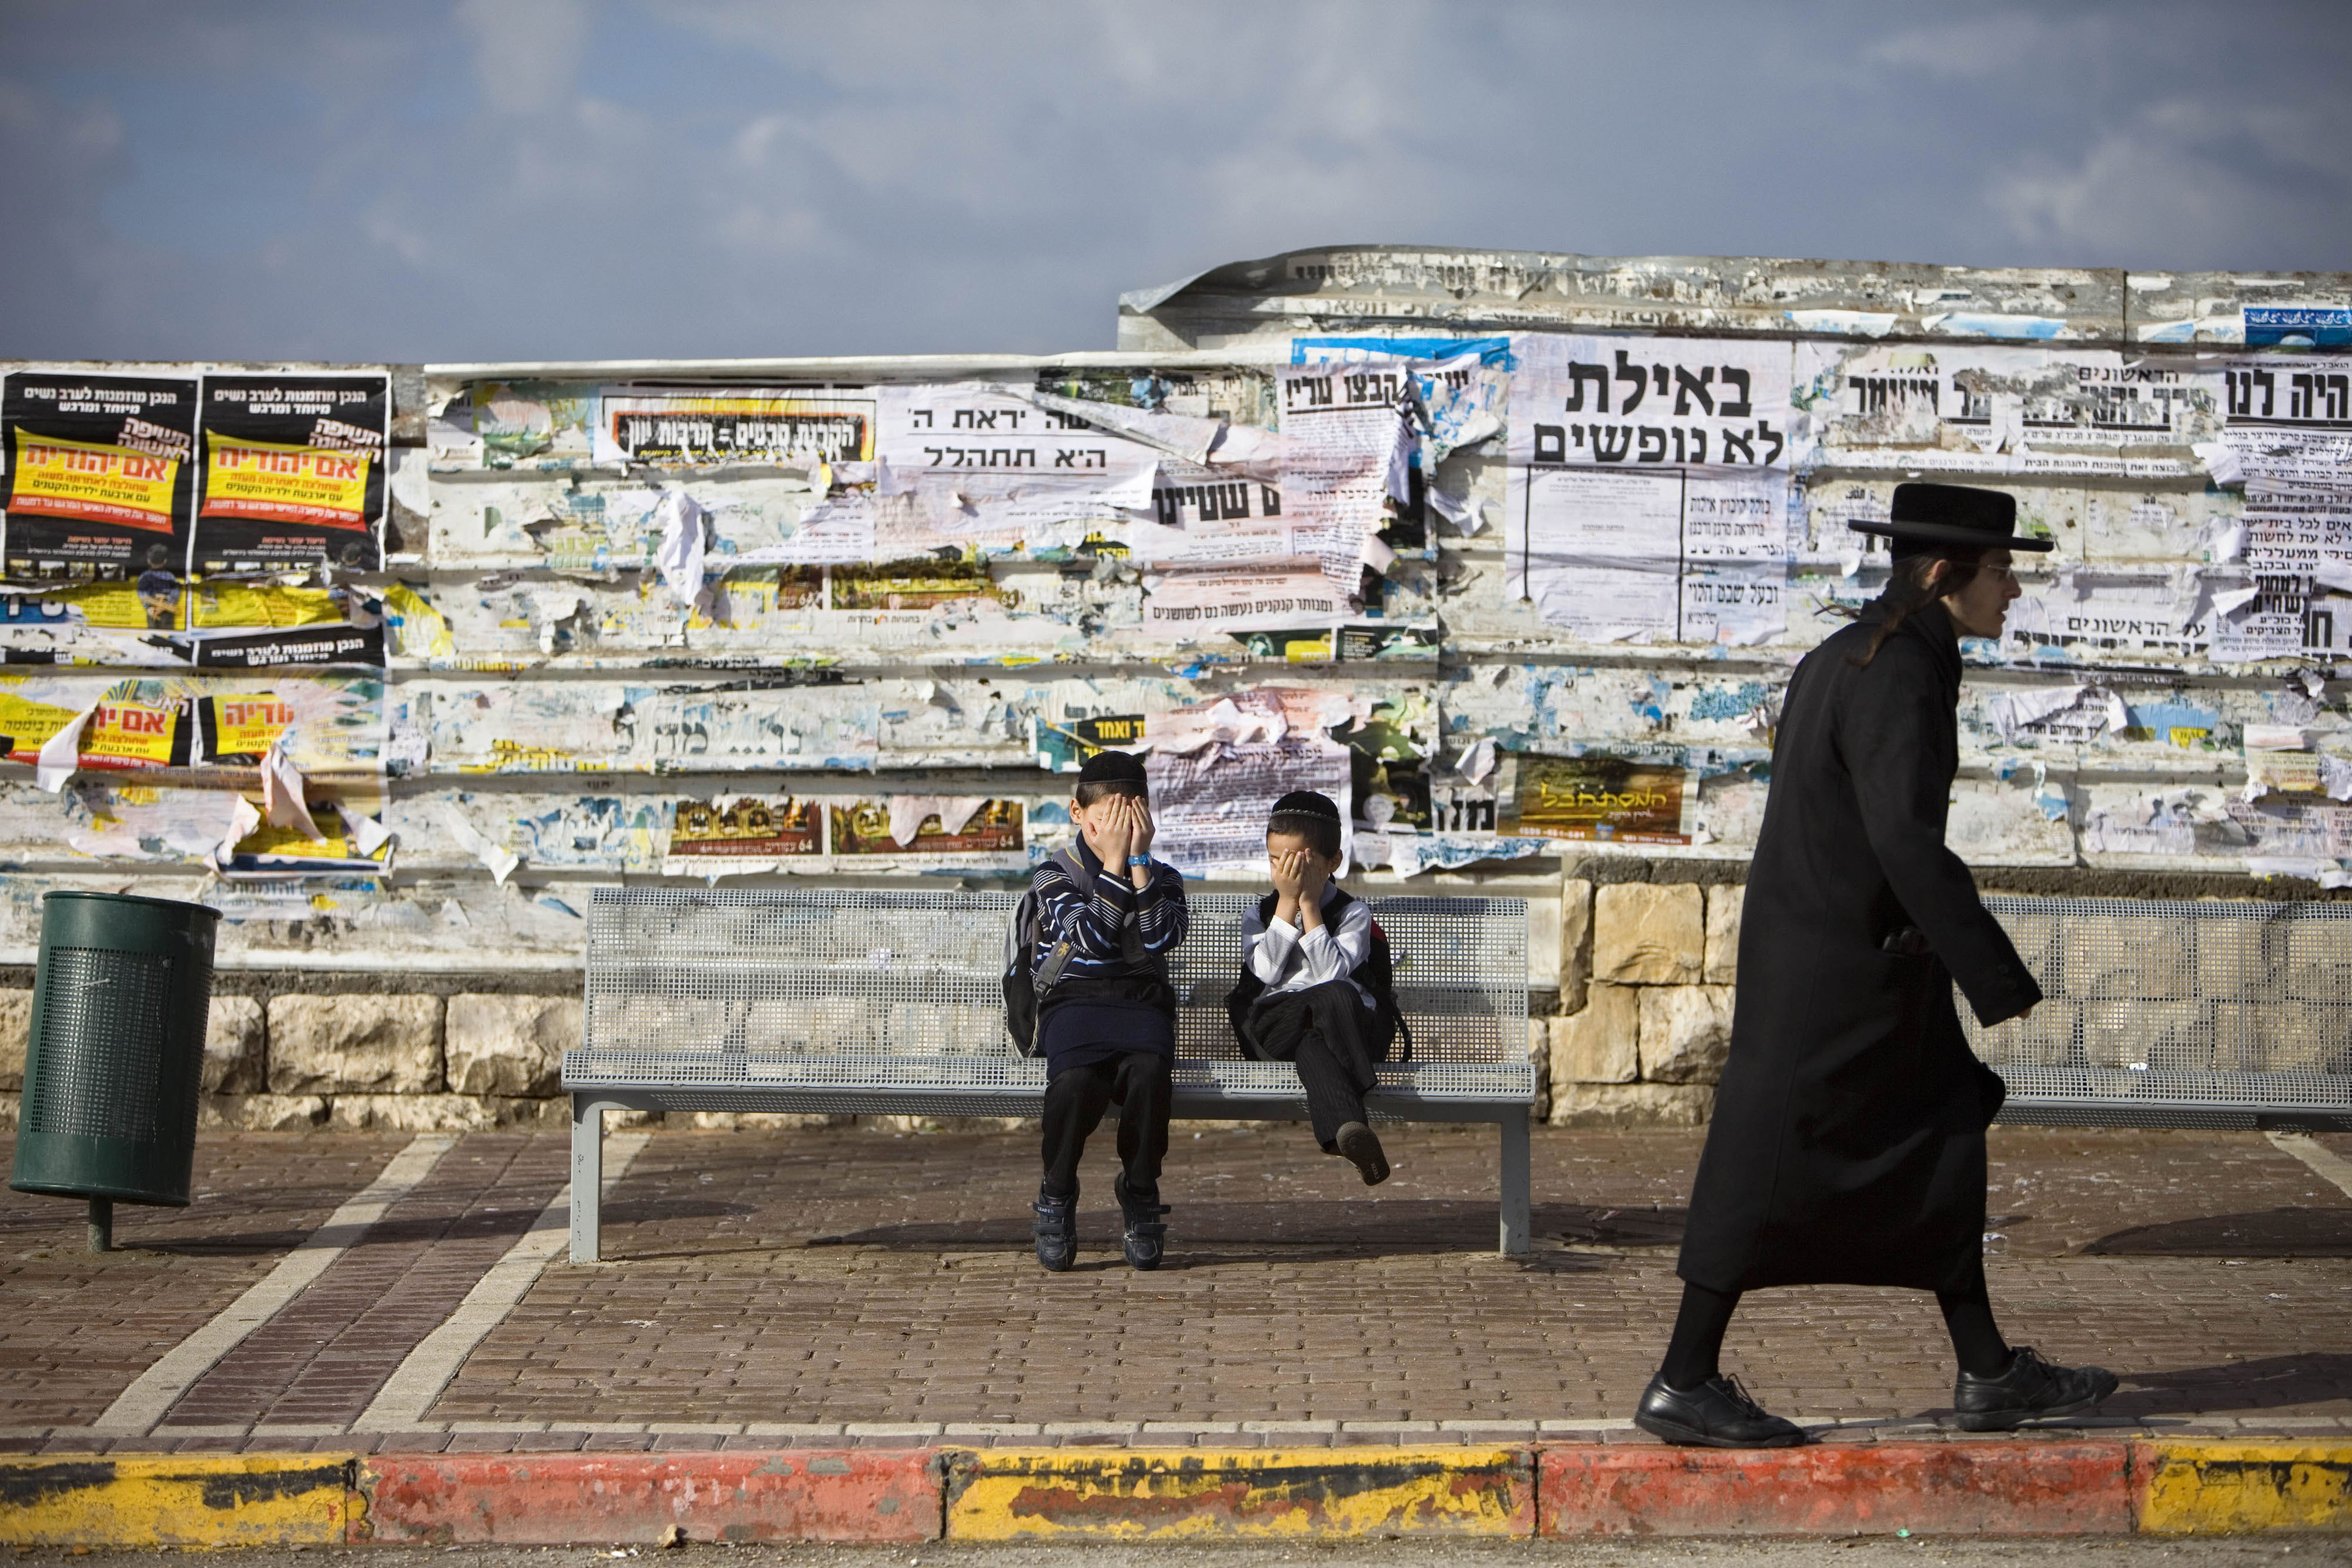 Οι νόμοι των υπερ-ορθόδοξων Εβραίων διχάζουν και πάλι το Ισραήλ